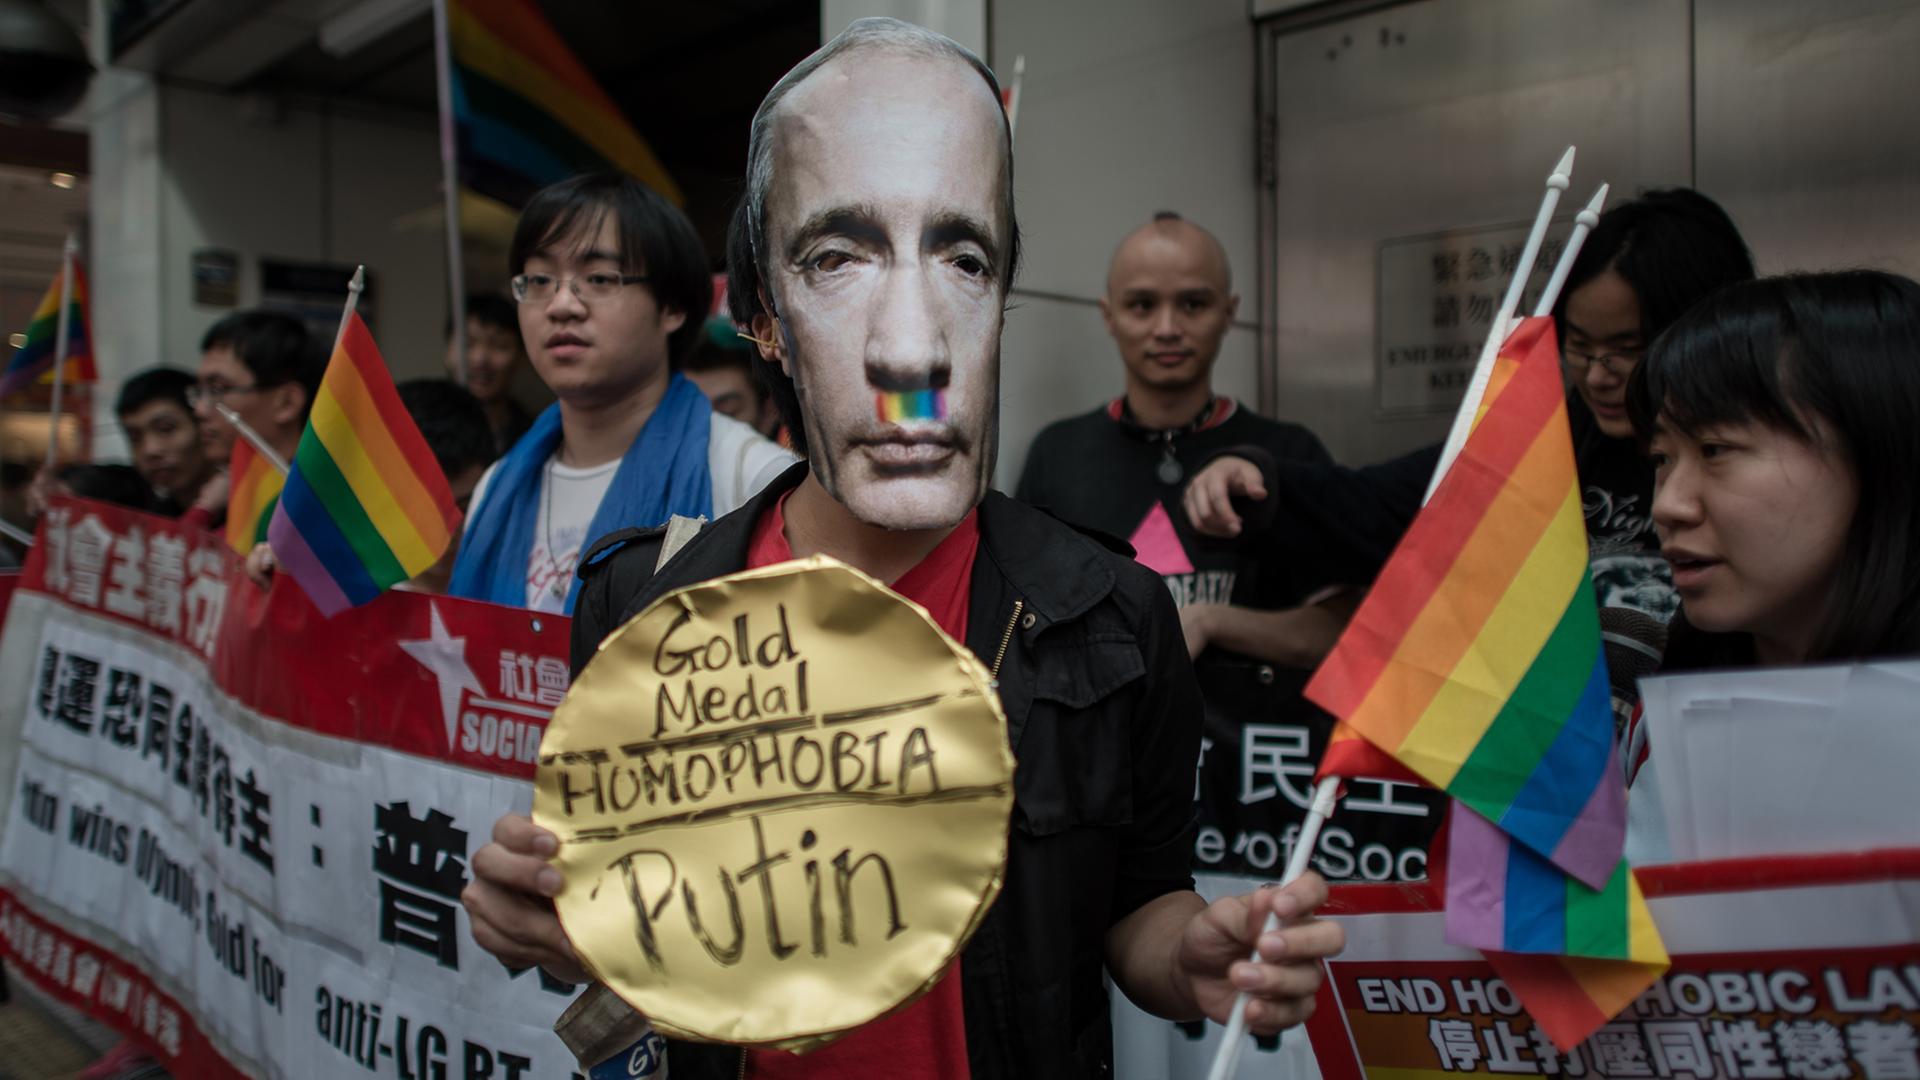 Hongkong: Menschen protestieren anlässlich der Olympischen Winterspiele in Sotschi gegen den russischen Präsidenten Wladimir Putin.